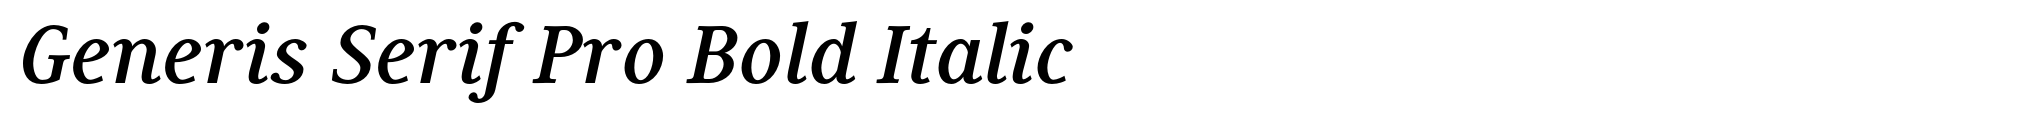 Generis Serif Pro Bold Italic image